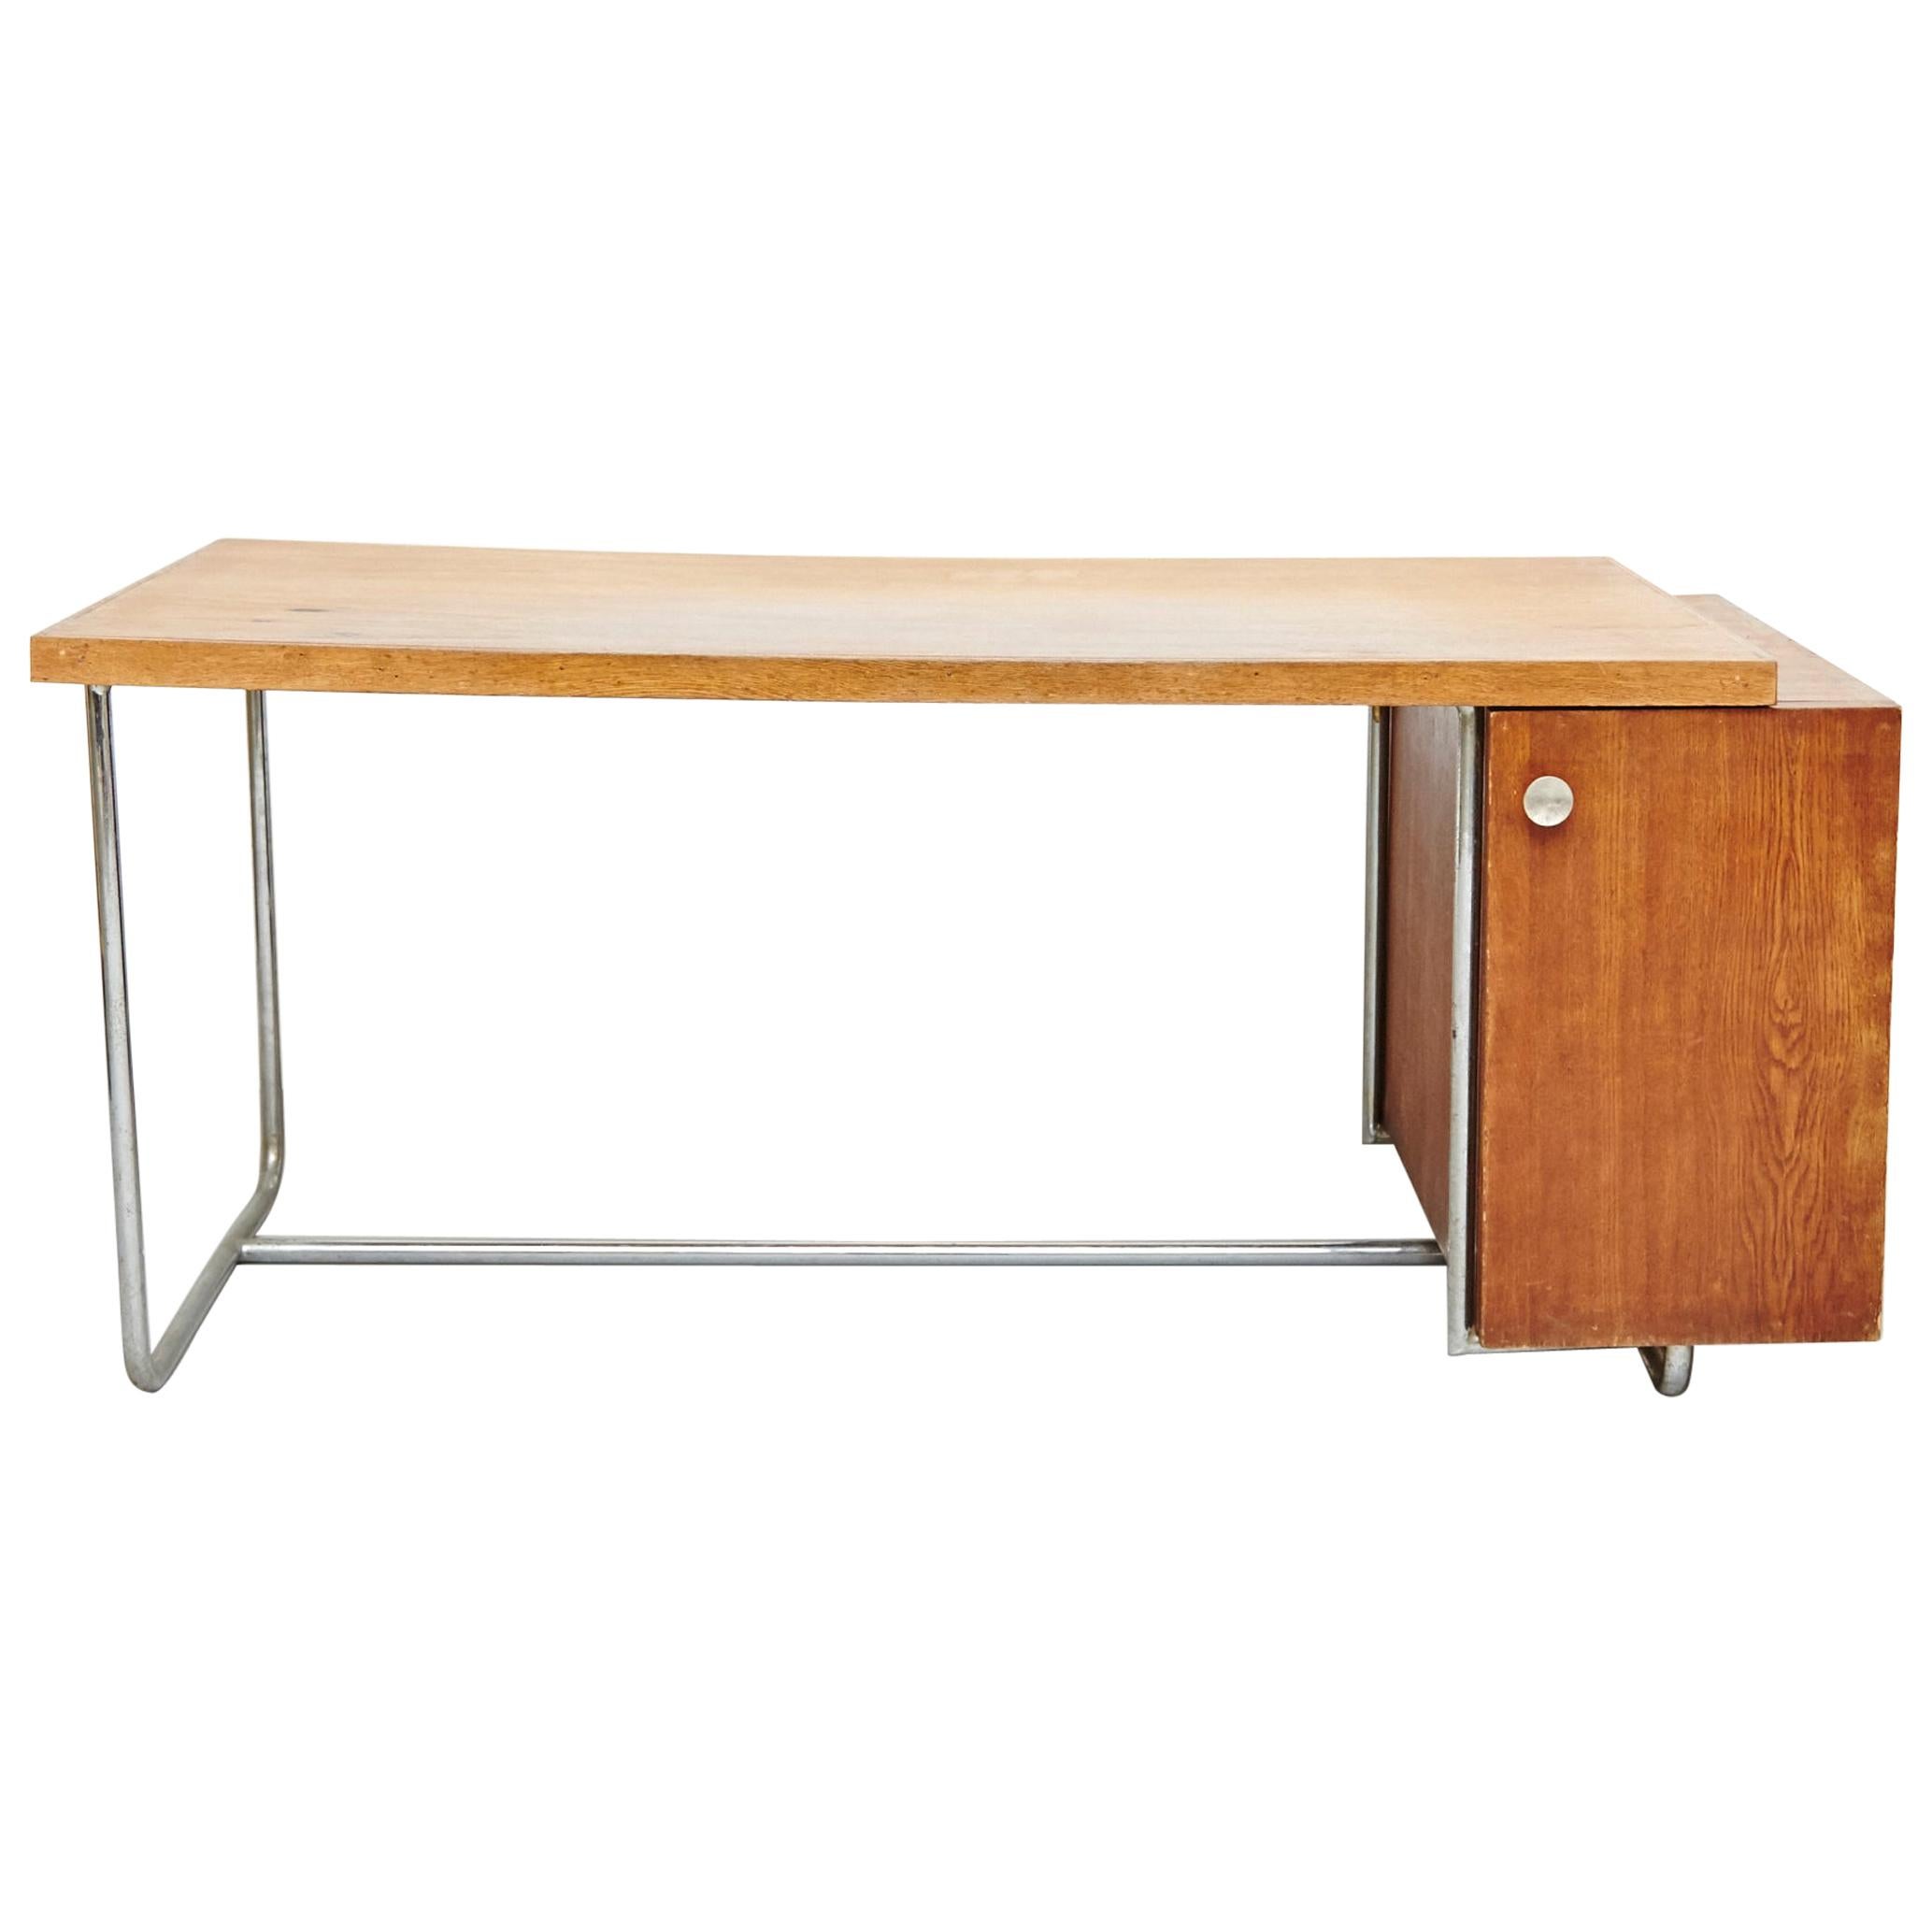 Bauhaus Large Desk in Wood and Tubular Metal, circa 1930